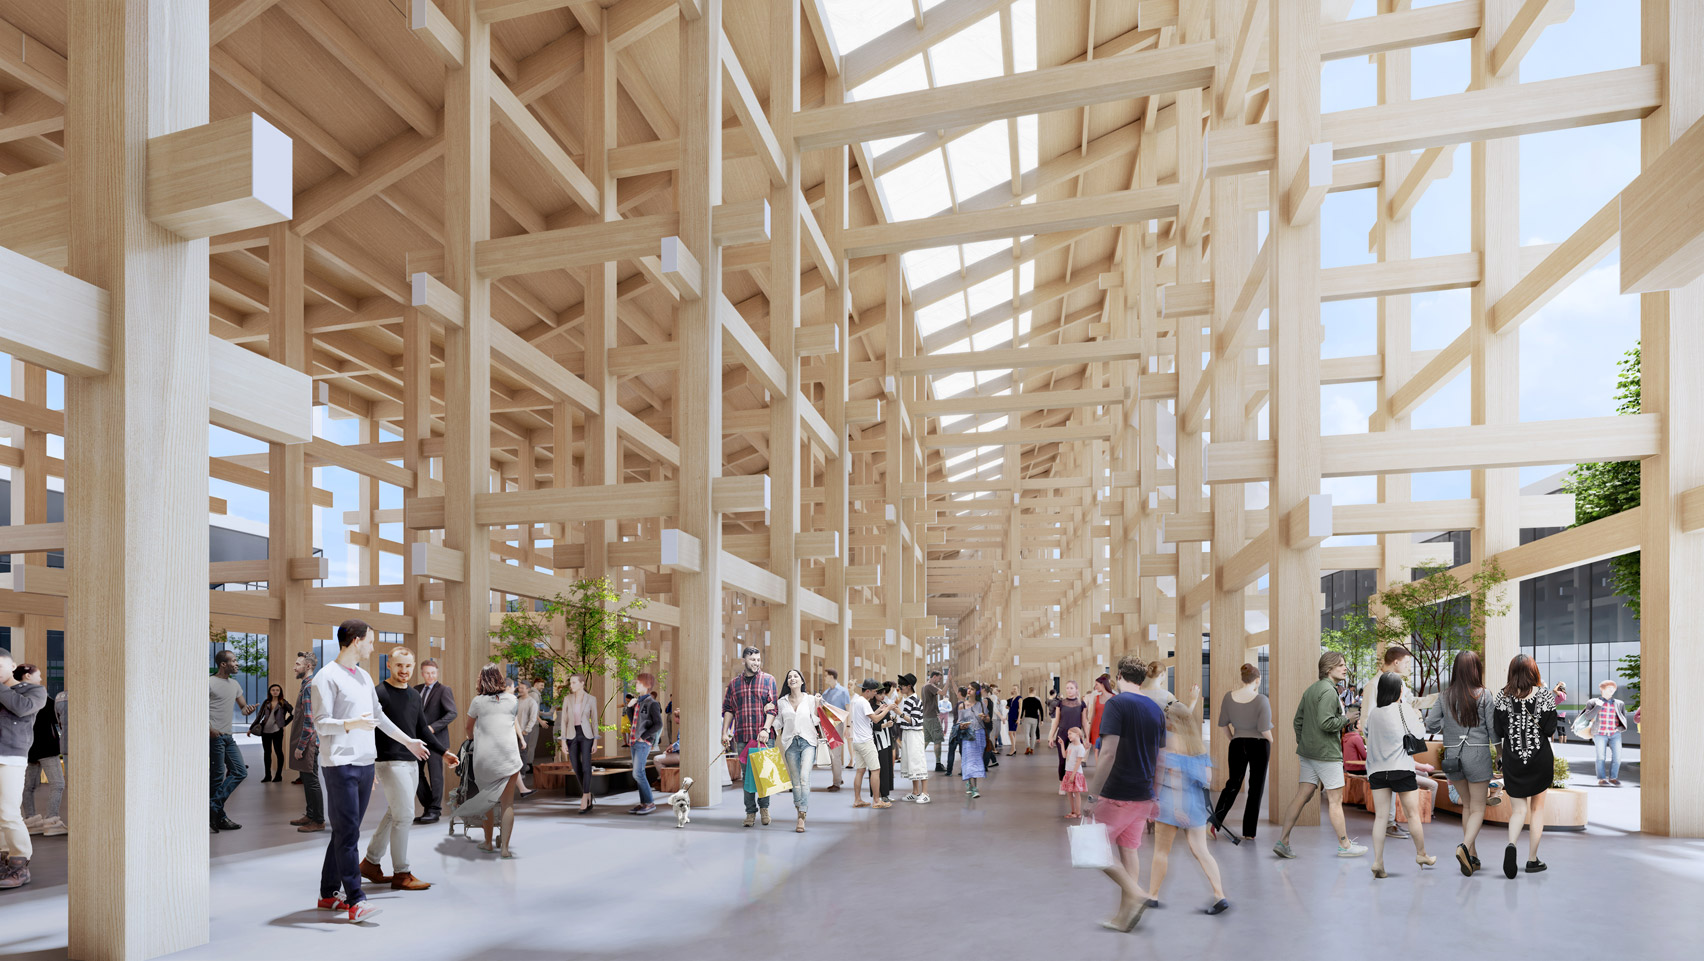 Interior visual of Expo 2025 Osaka masterplan by Sou Fujimoto